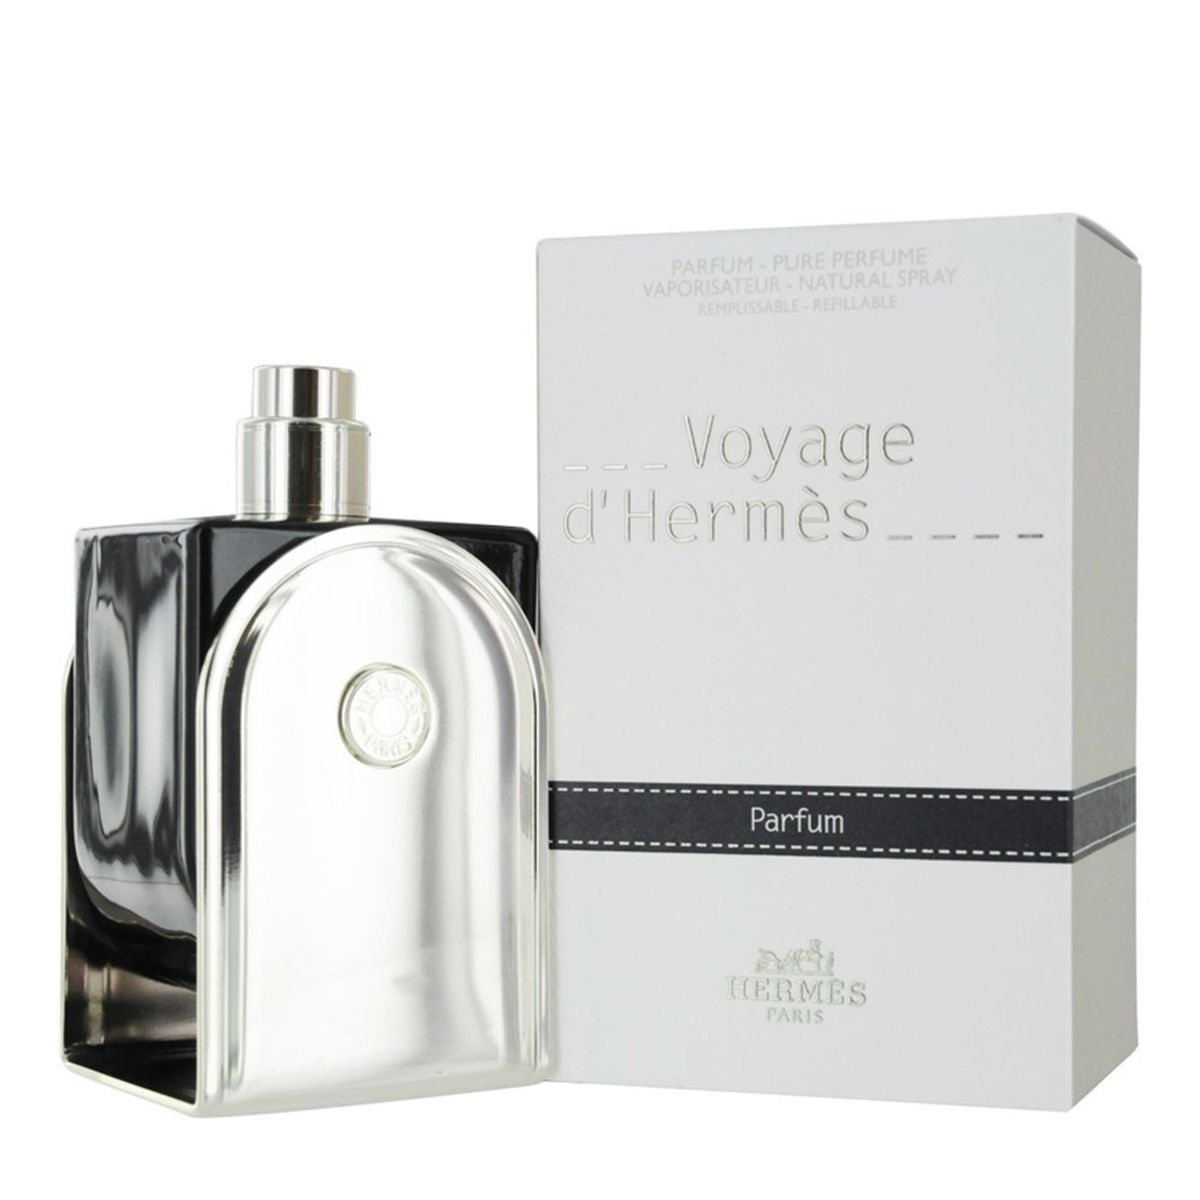  Hermes Voyage d'Hermes Parfum 